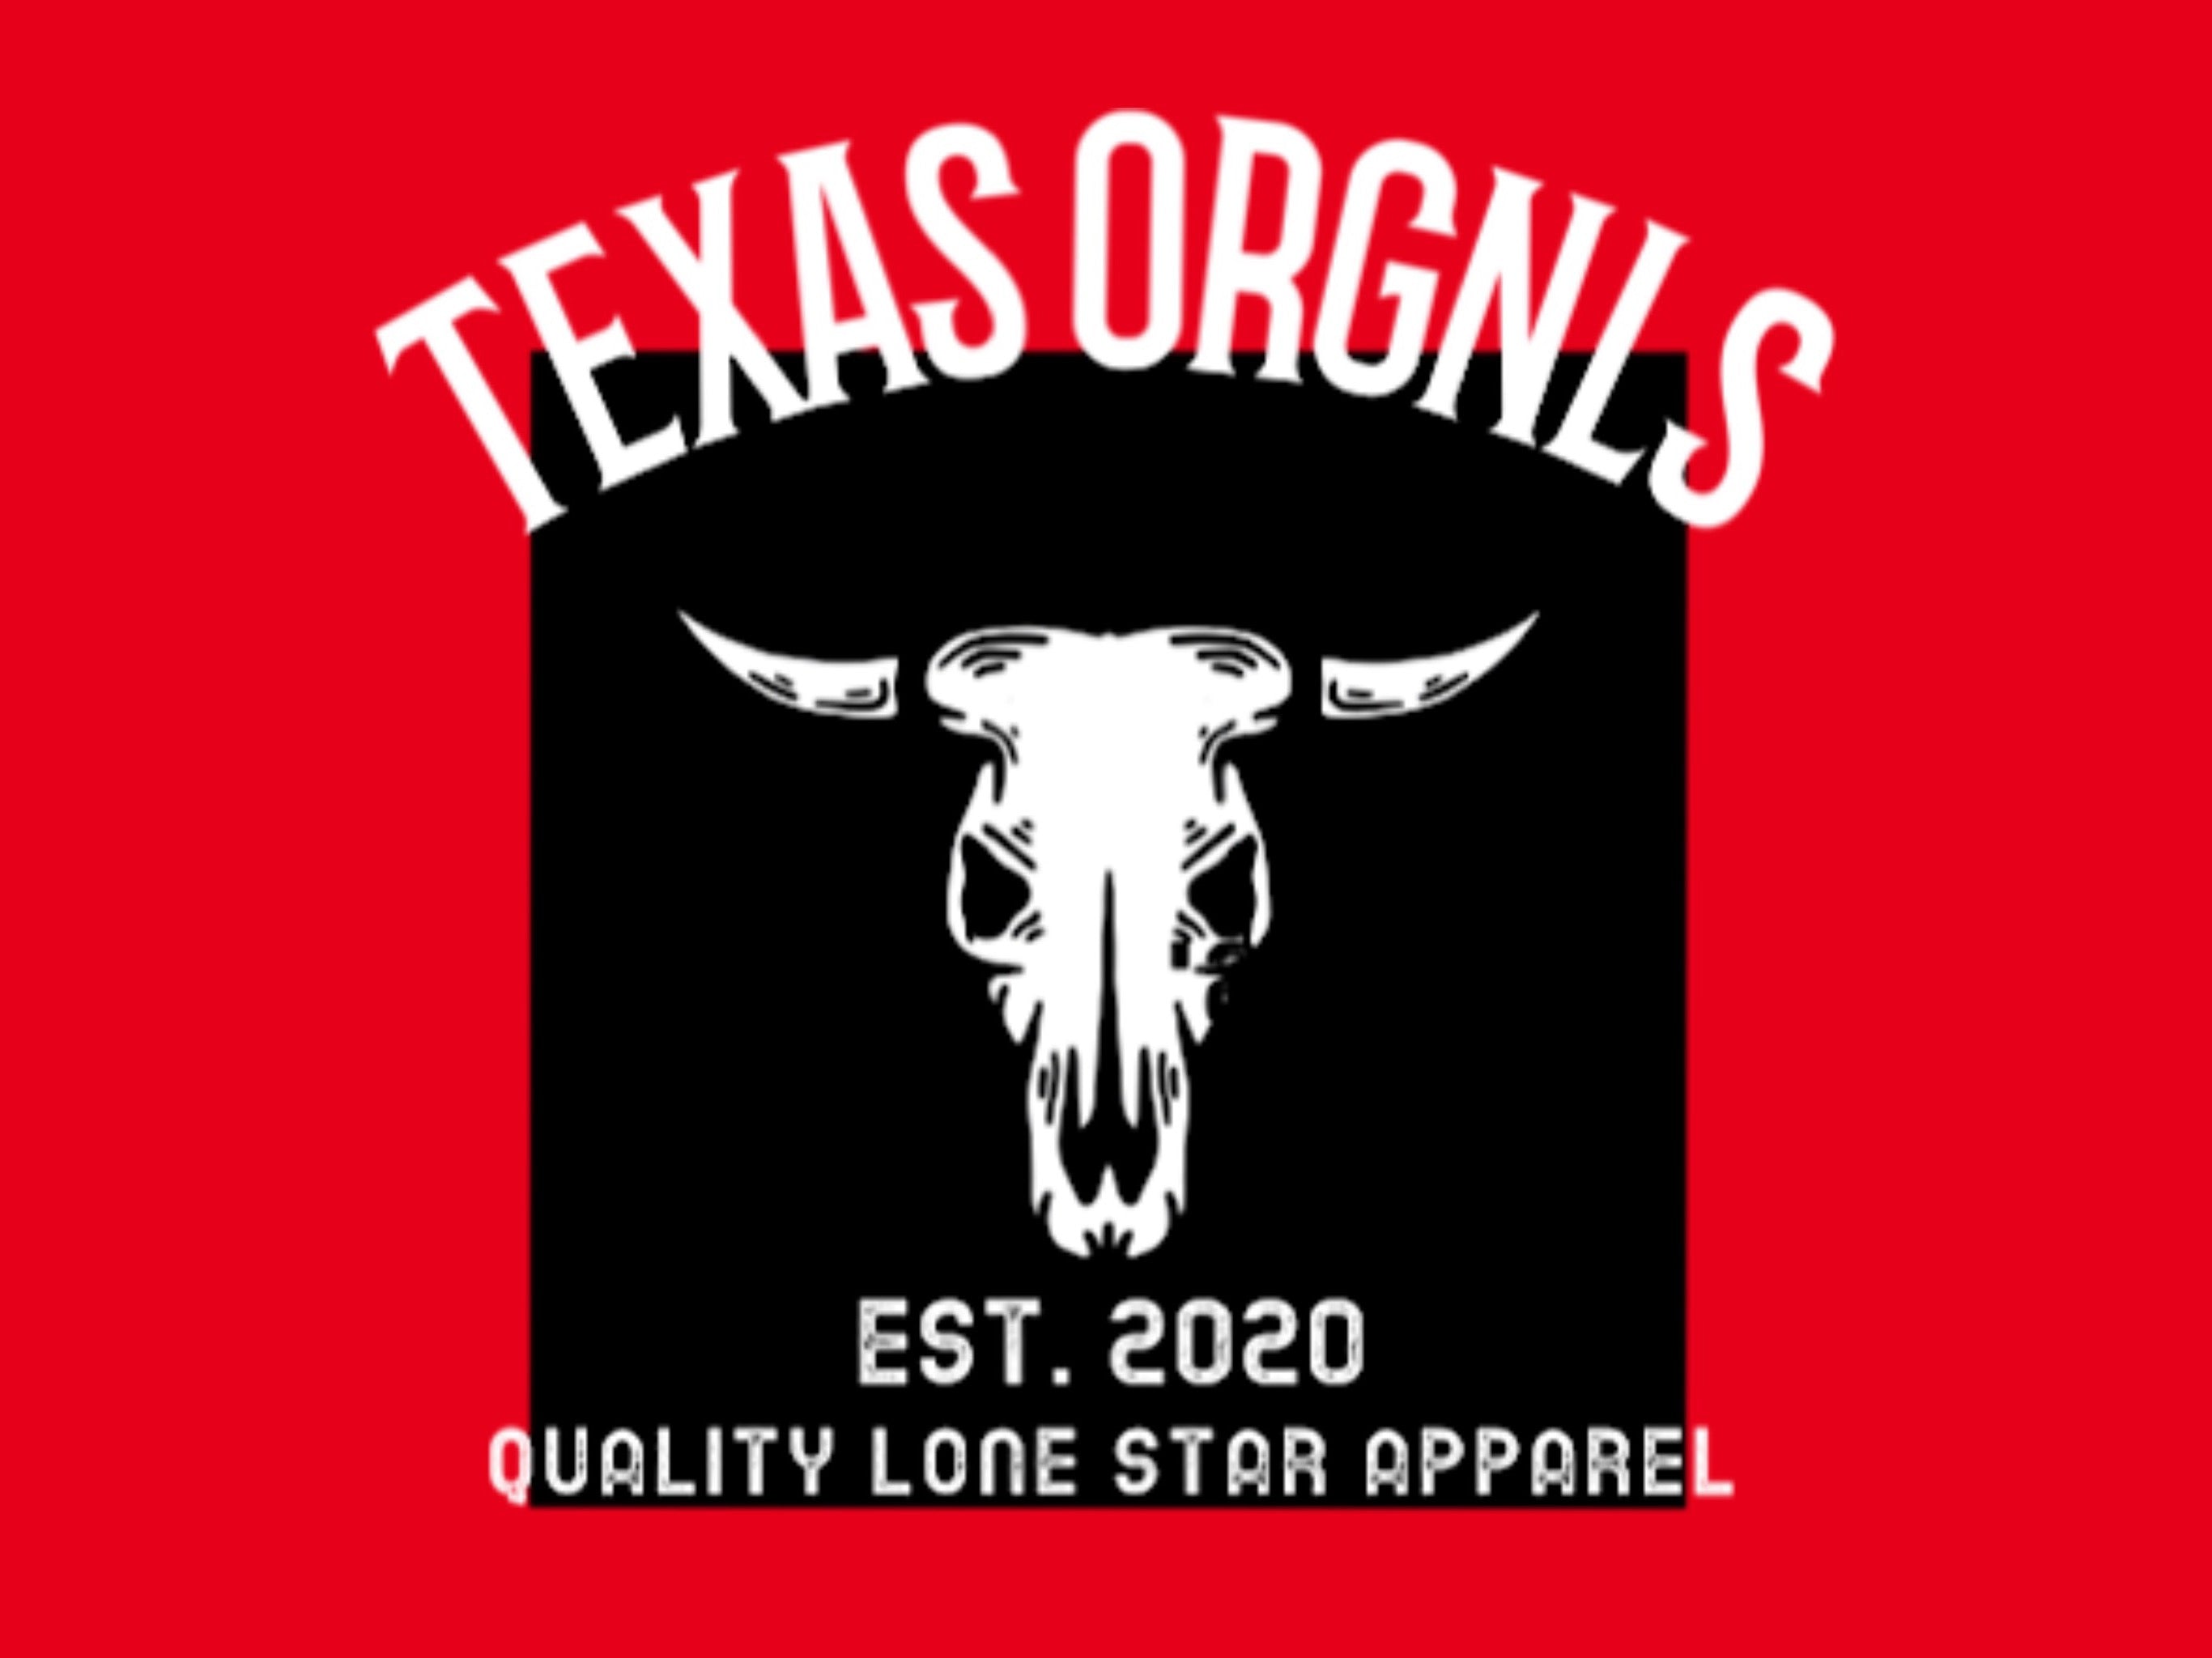 Texas Orgnls